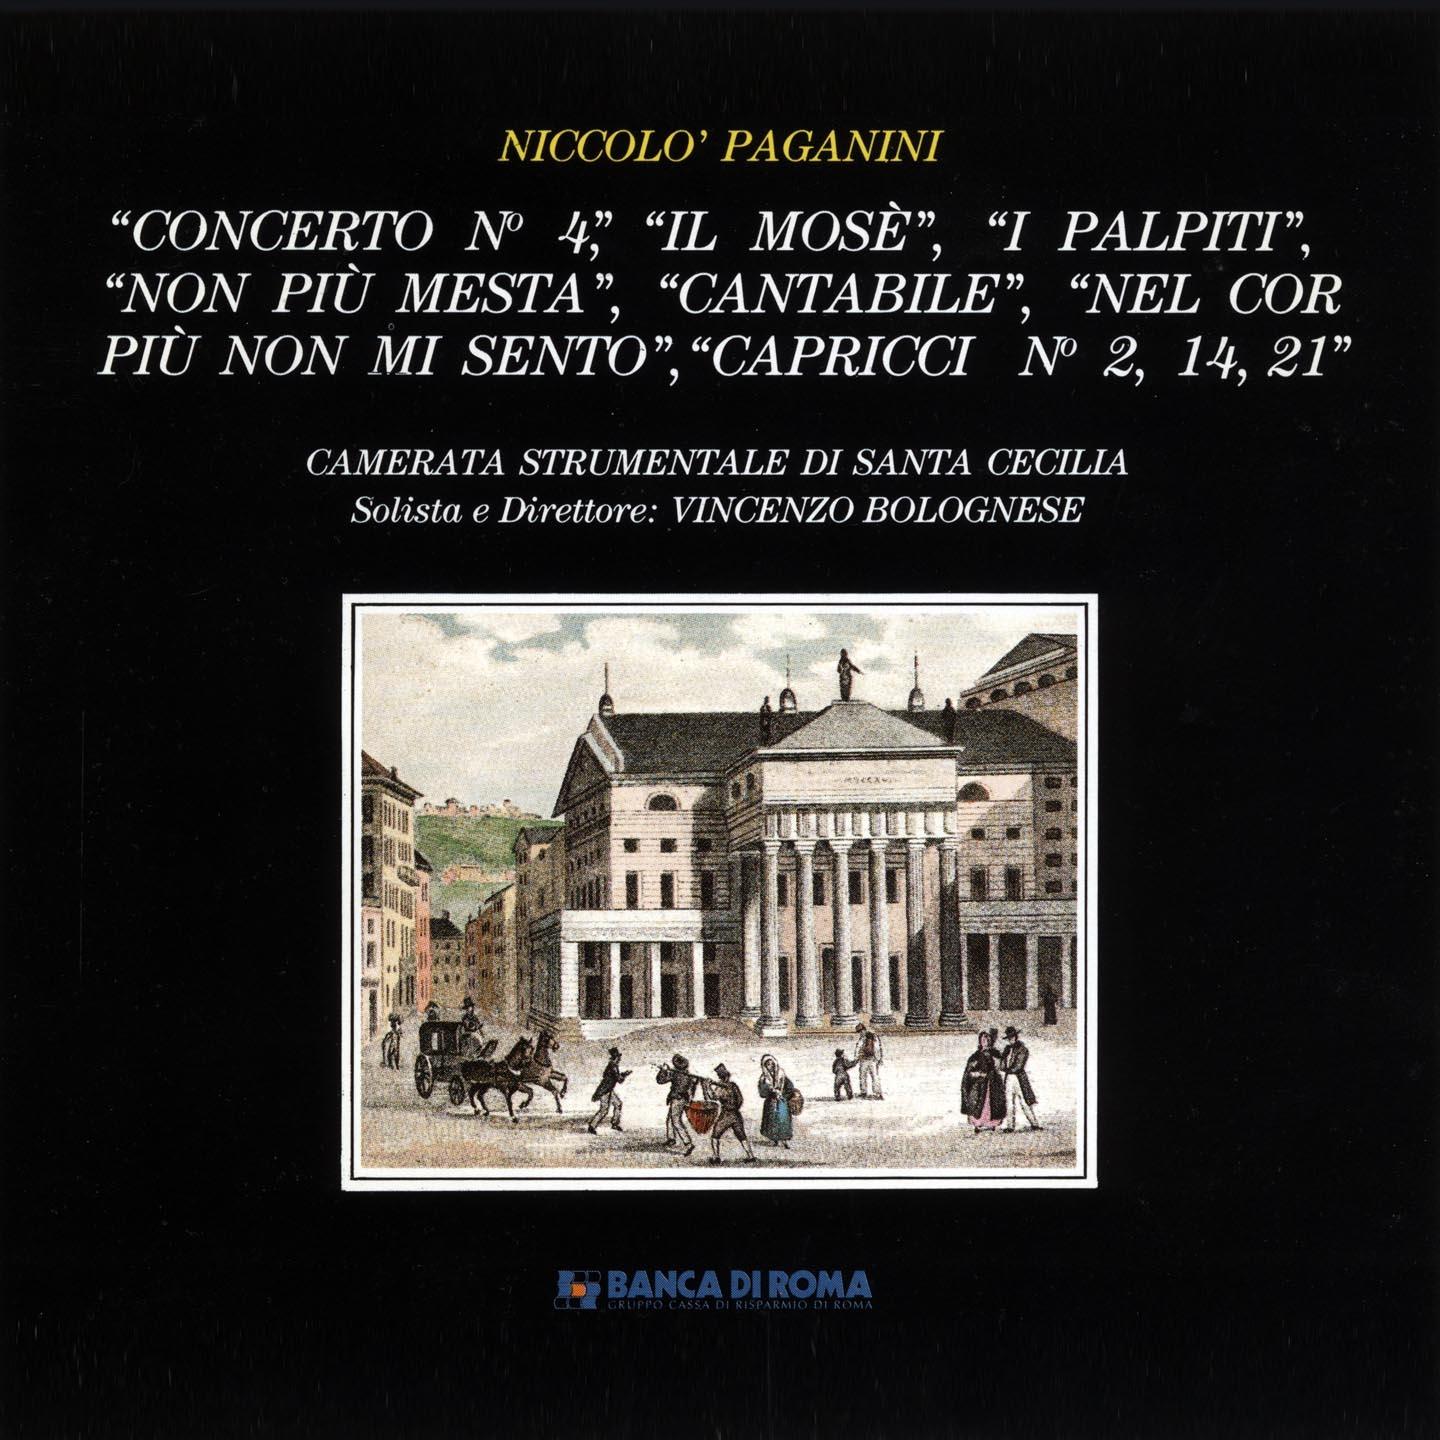 Niccolo Paganini: Concerto No. 4  Il Mose  I palpiti  Non piu mesta  Cantabile  Nel cor piu non mi sento  Capricci No. 2, 14, 21